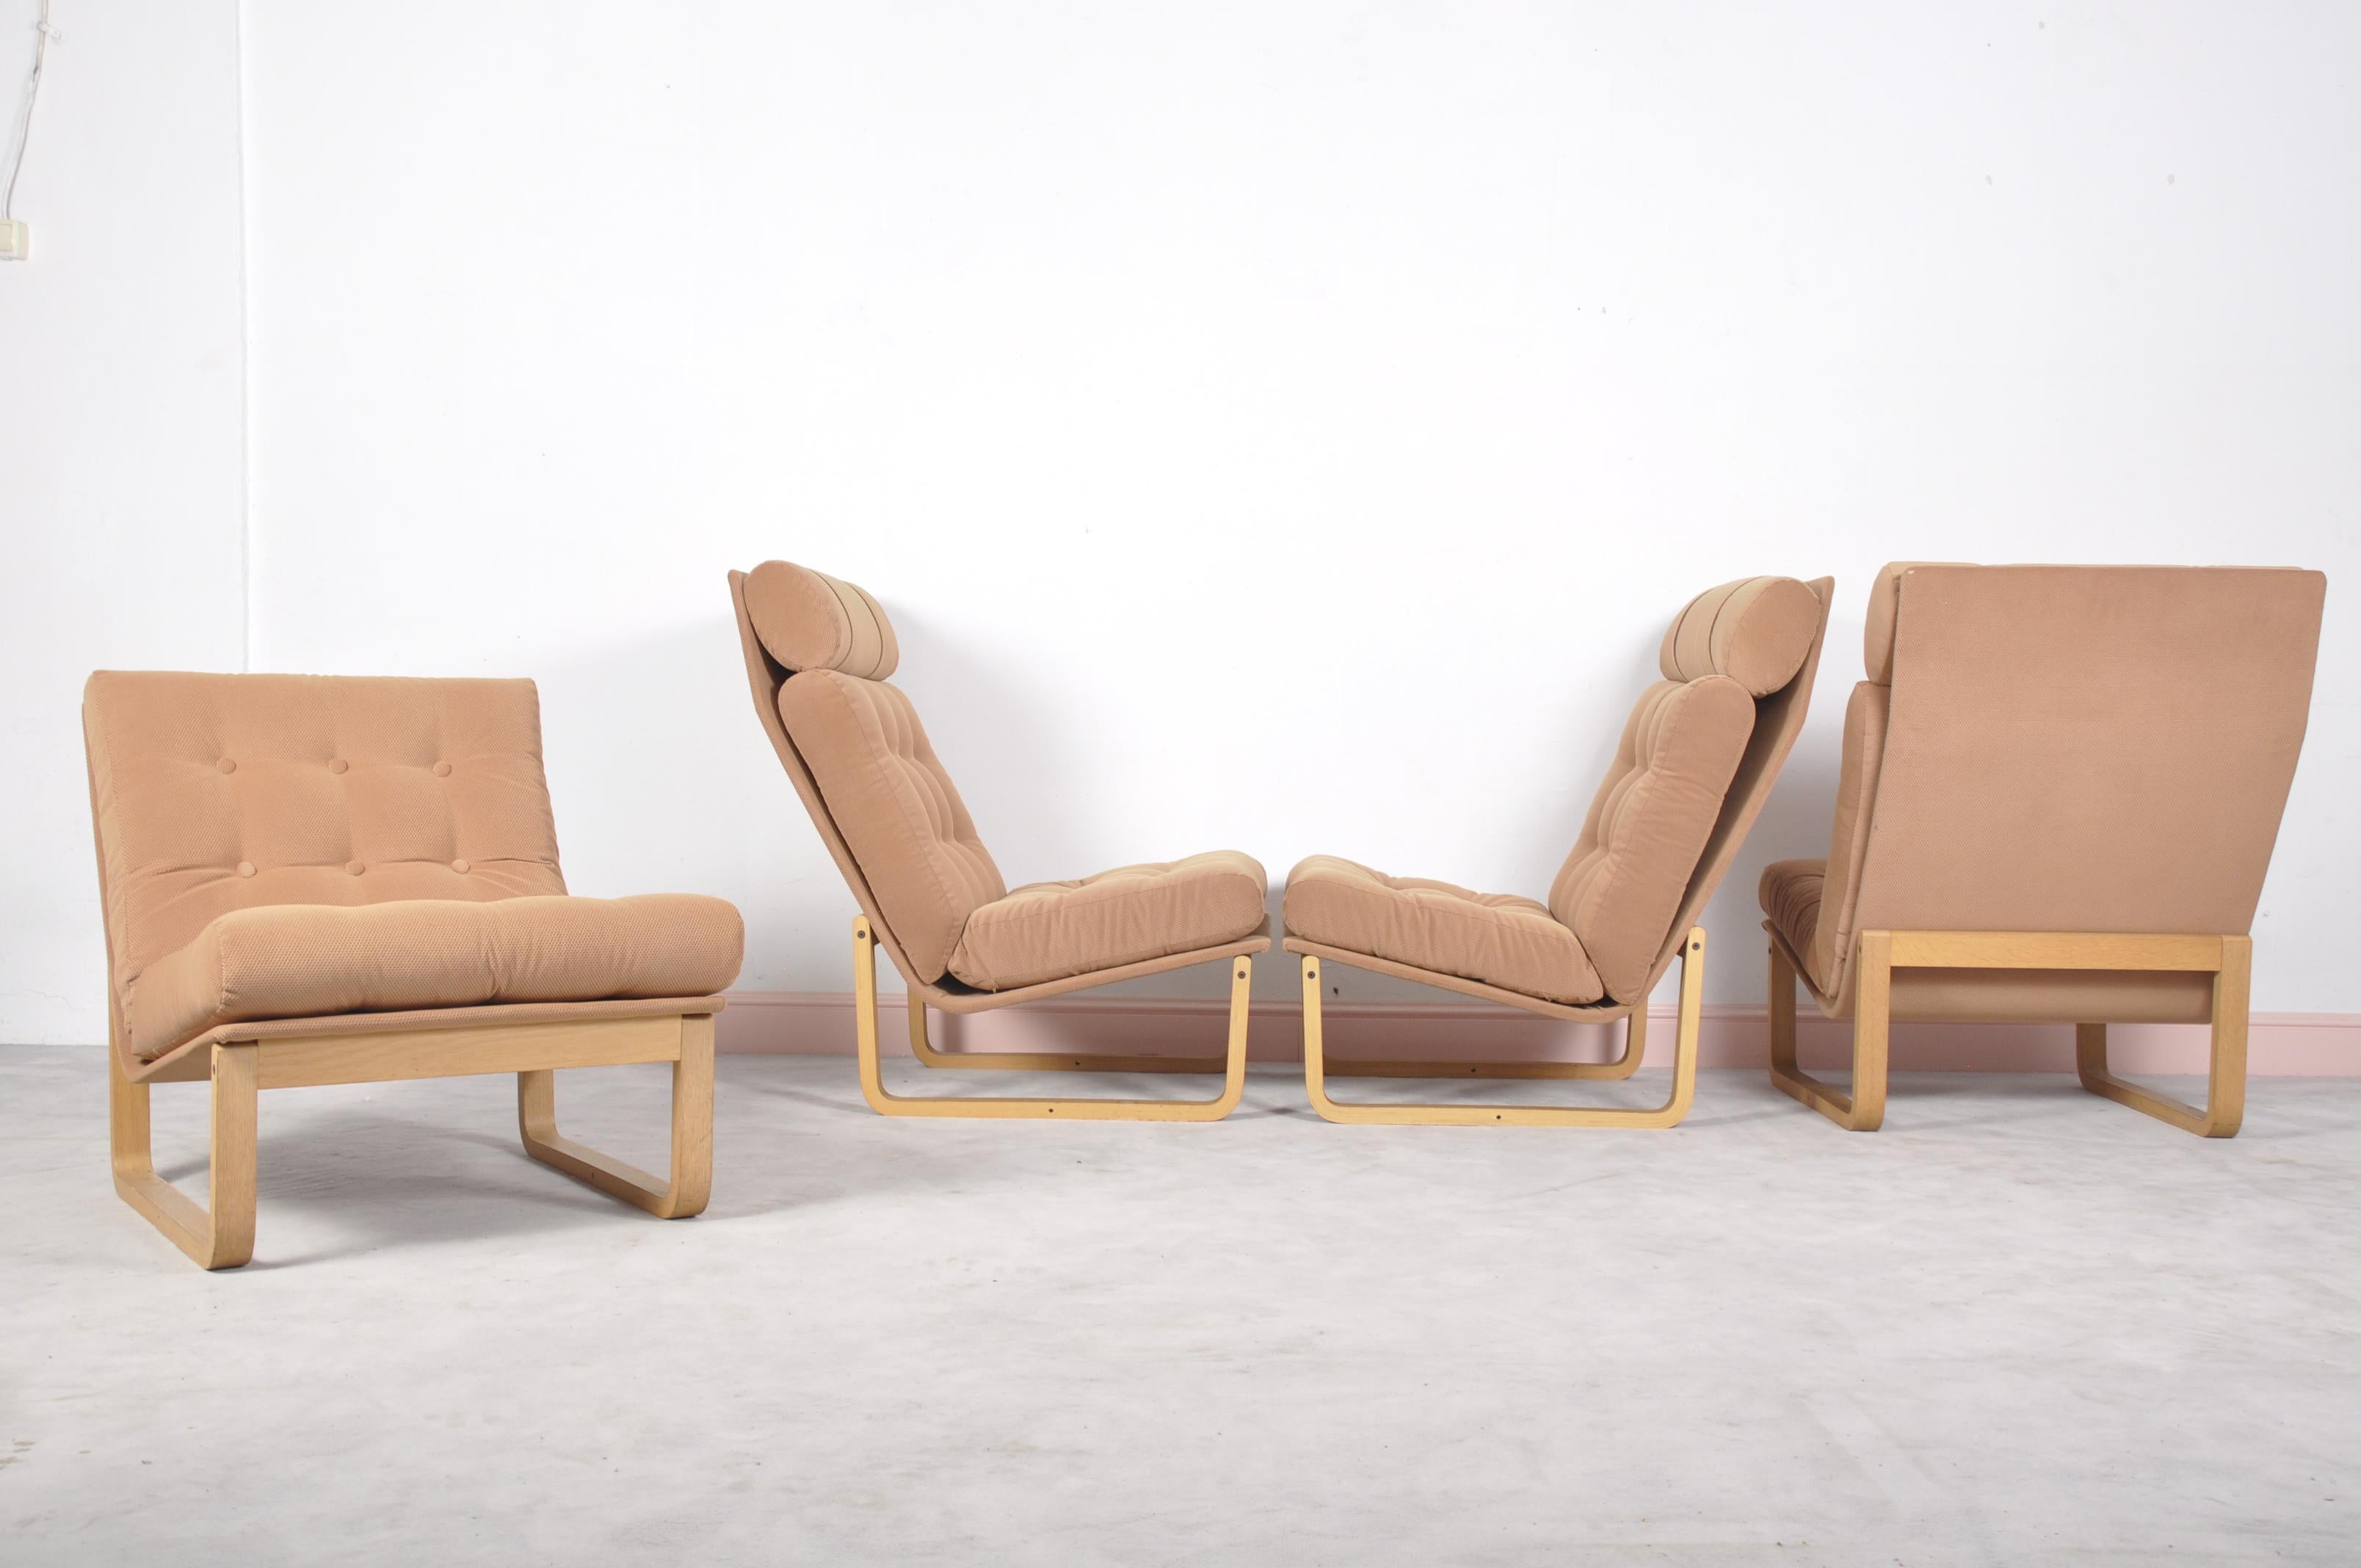 Scandinavian Modern Sectional Sofa by Rud Thygesen & Johnny Sorensen for Magnus Olsen, Durup, 1960s For Sale